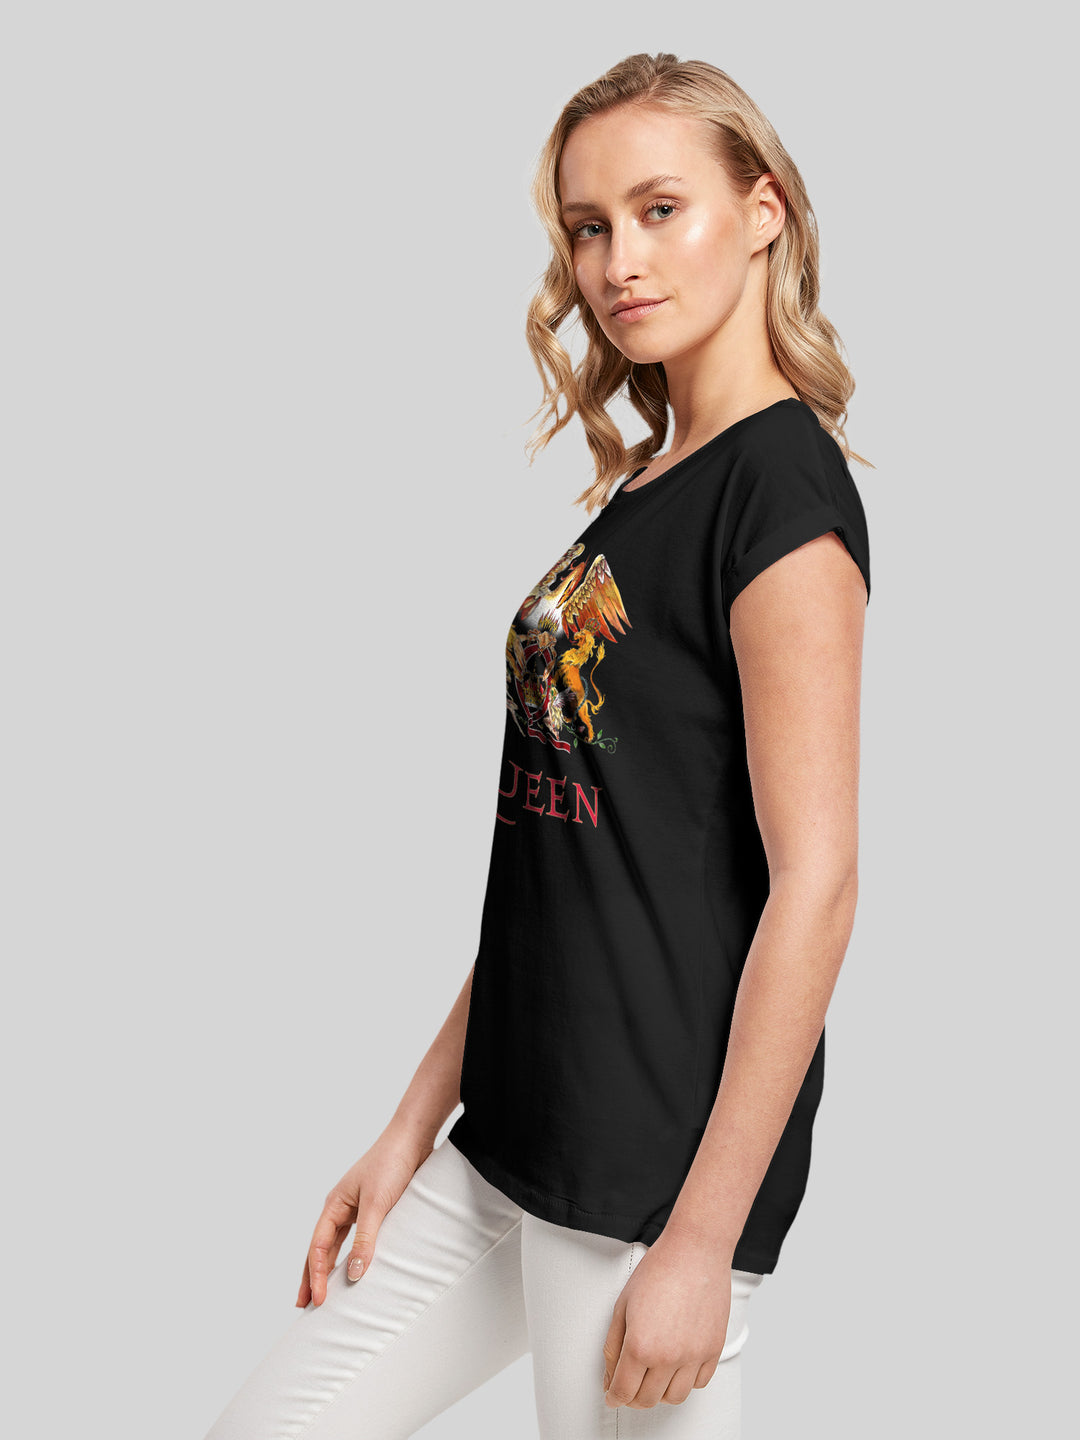 Queen T-Shirt | Classic Crest | Premium Kurzarm Damen T Shirt